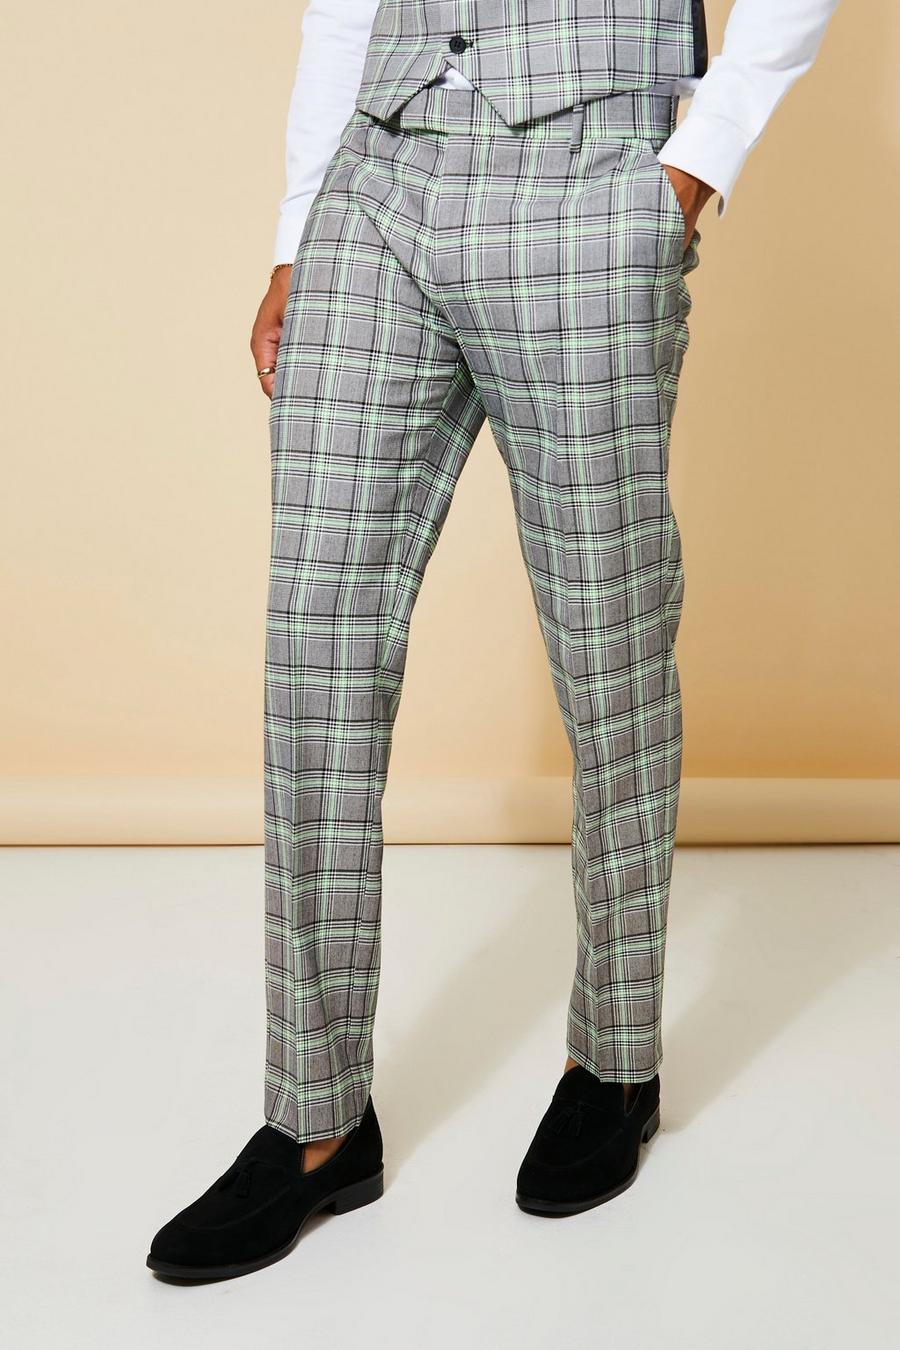 Pantaloni completo Slim Fit a quadri in colori fluo, Neon-green